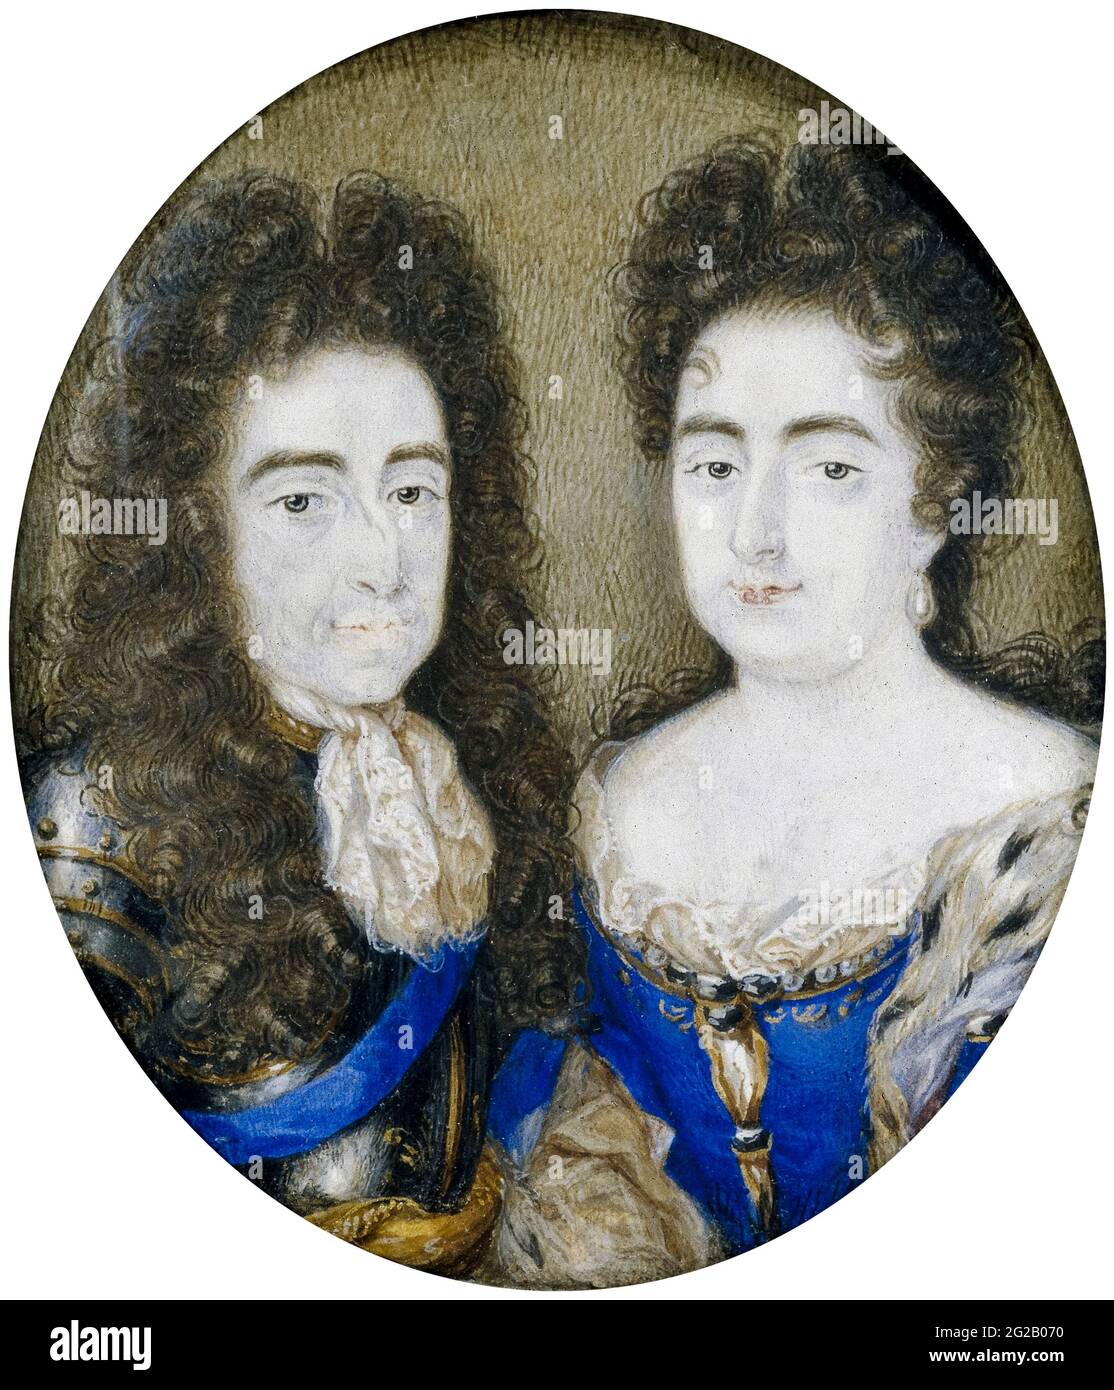 Wilhelm und Maria: Wilhelm III. (1650-1702) Prinz von Oranien und König von England (1689-1702) mit seiner Frau Maria Stuart (1662-1694) Königin Maria II. Von England (1689-1694), Porträtminiatur von Peter Hoadly, 1700-1750 Stockfoto